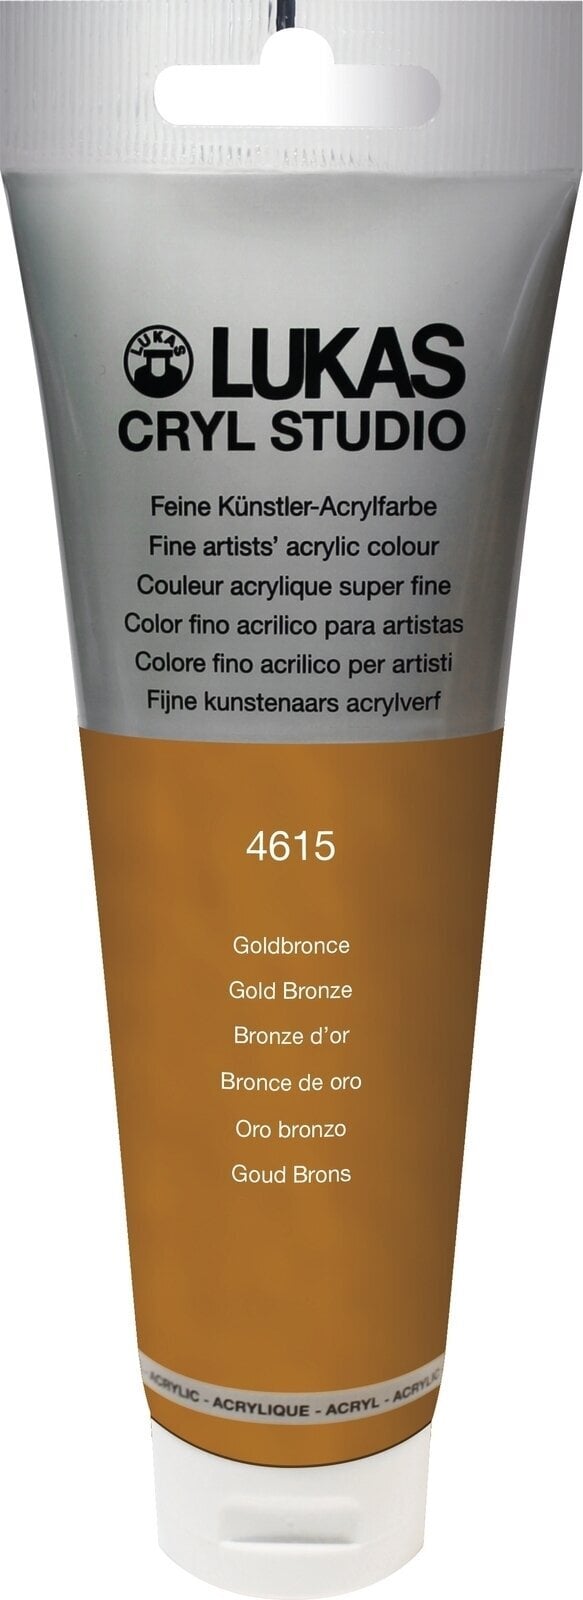 Akrylová barva Lukas Cryl Studio Akrylová barva 125 ml Gold Bronze